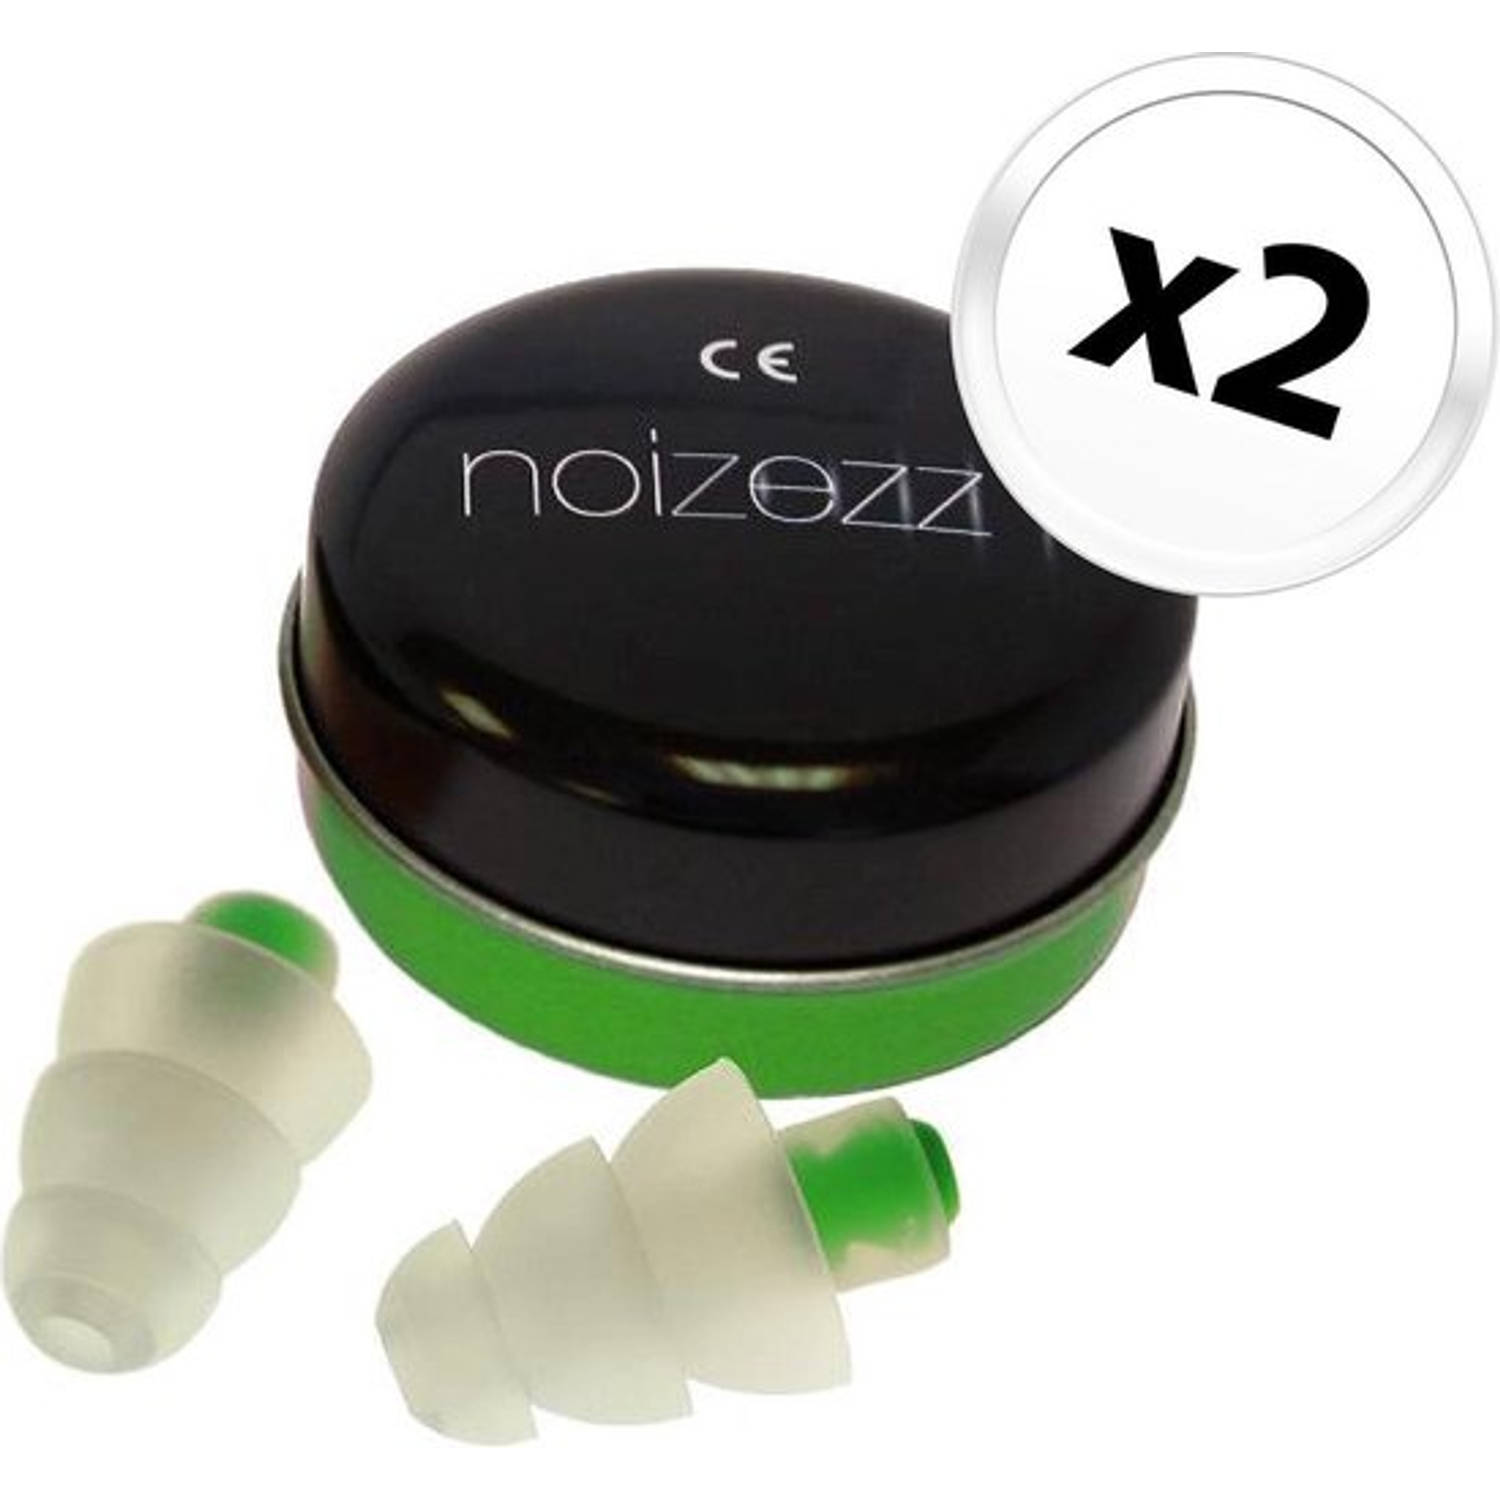 Noizezz plug & play green medium - 2 verpakkingen met 2 stuks